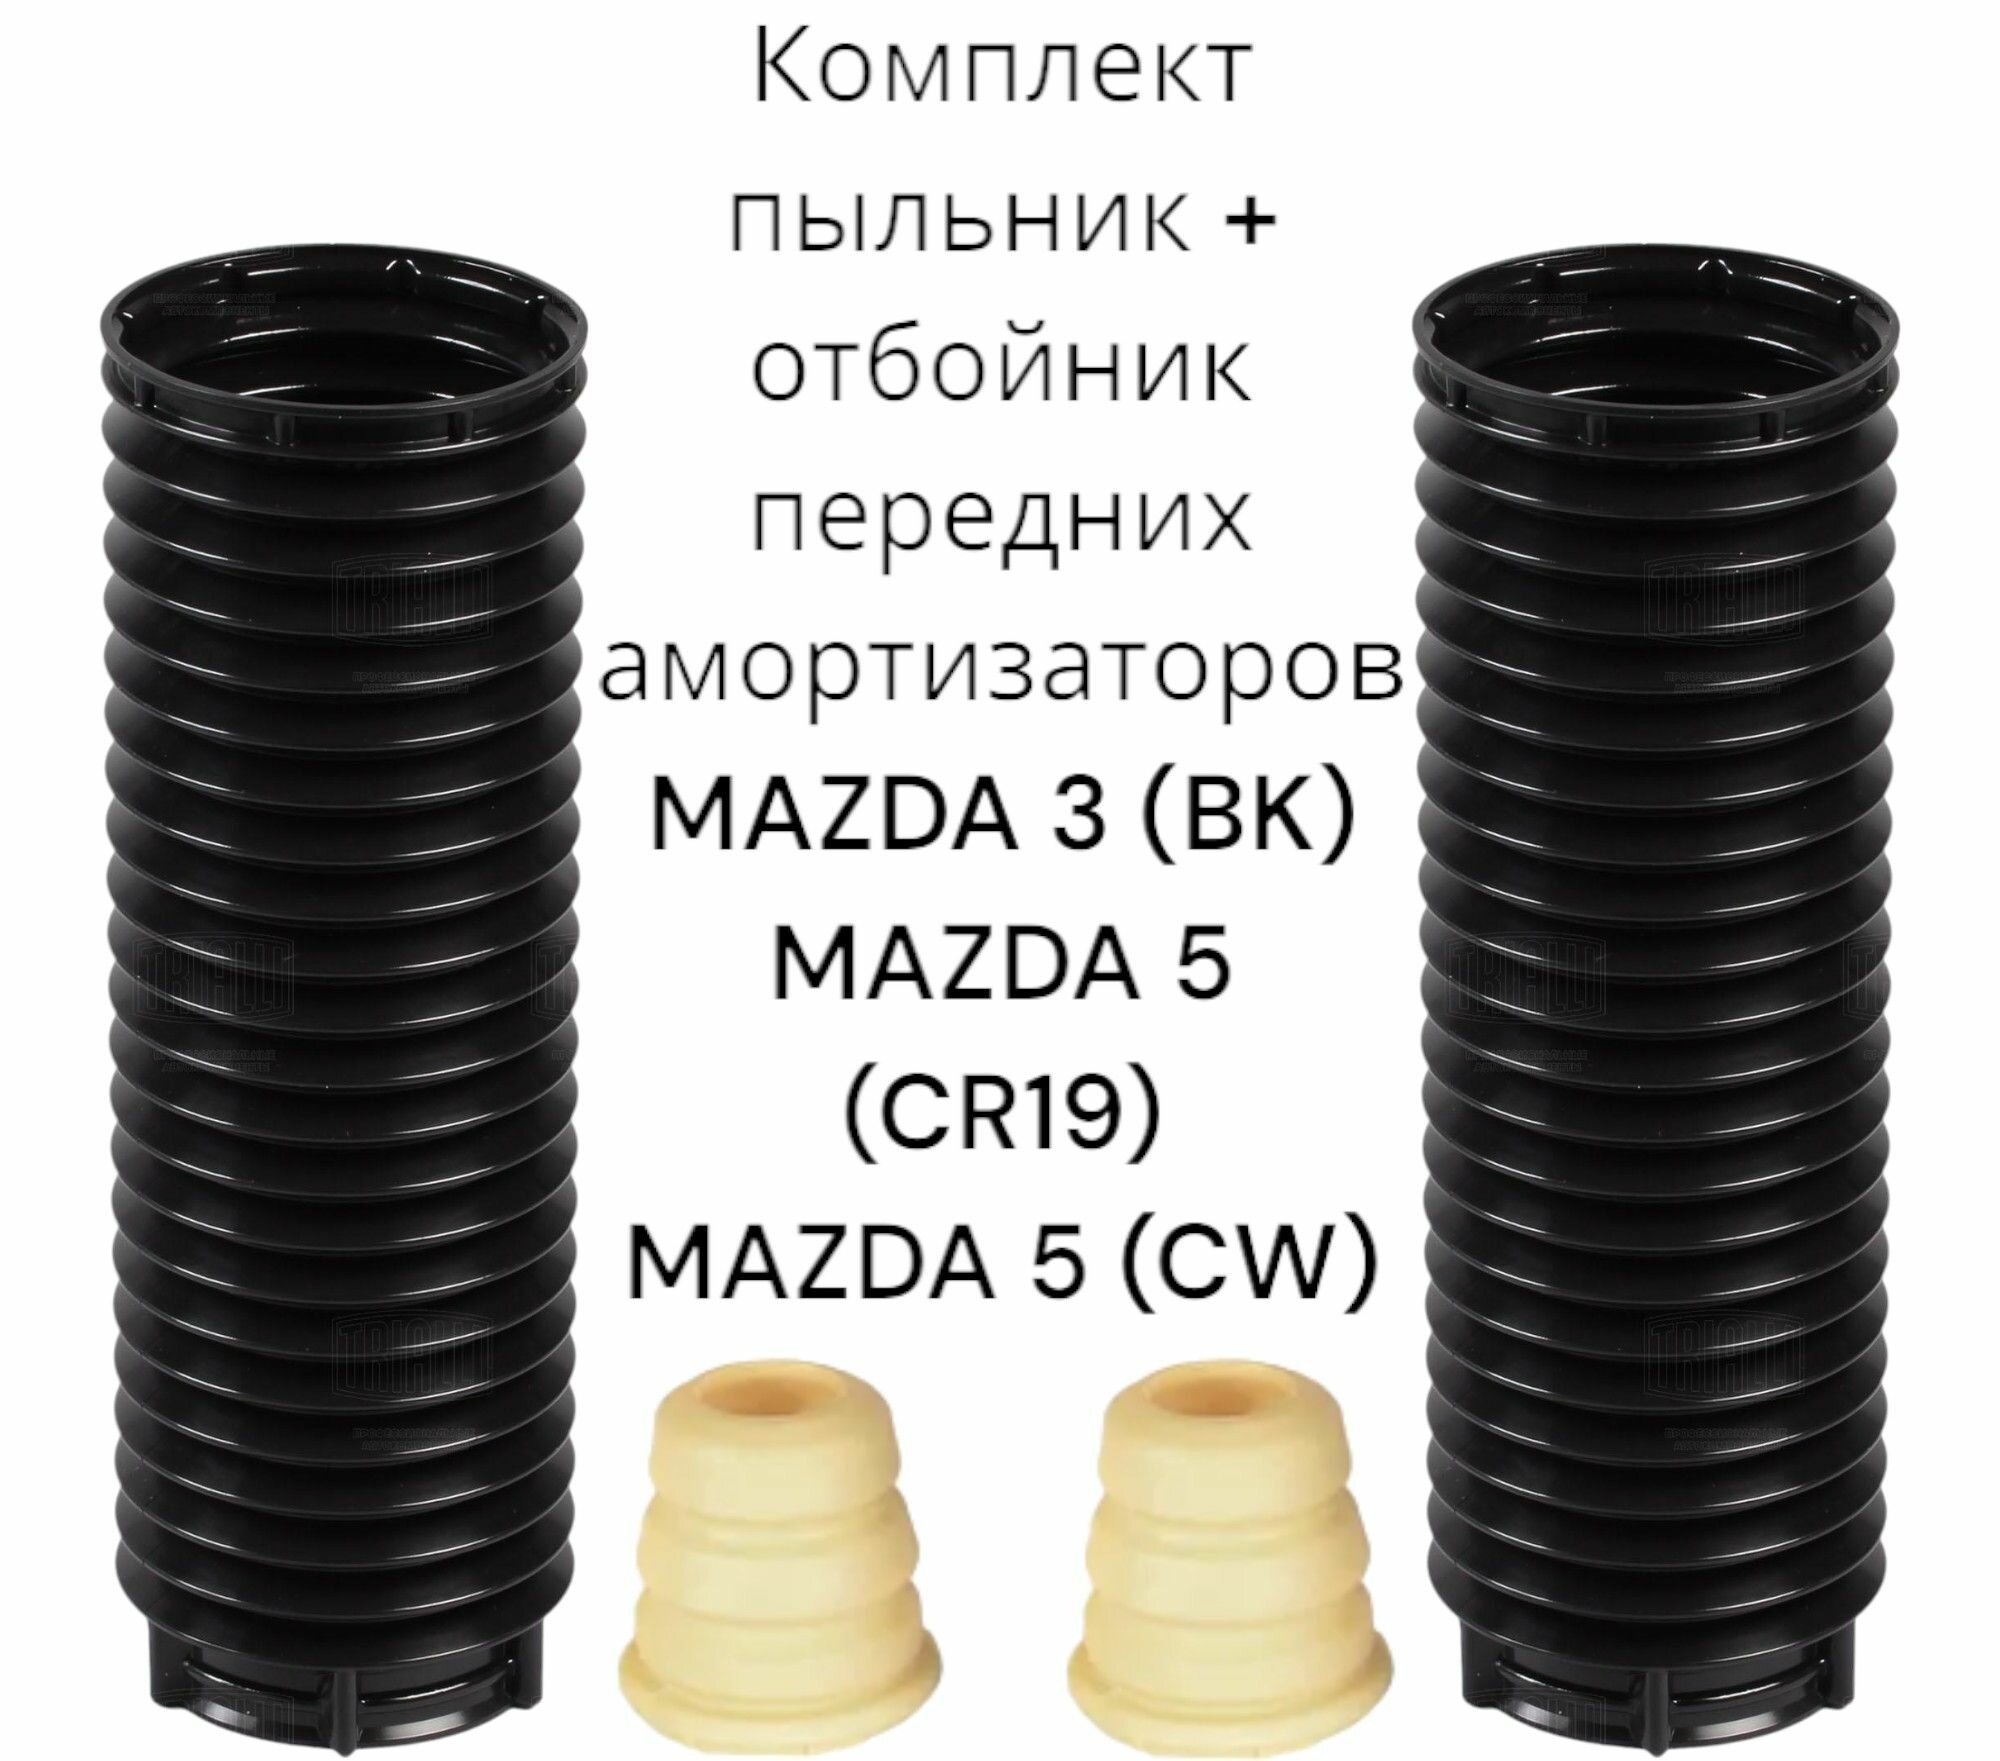 Комплект пыльник + отбойник переднего амортизатора Mazda 3 (BK) Mazda 5 Германия (Мазда 3 Бк Мазда 5) На 2 стороны